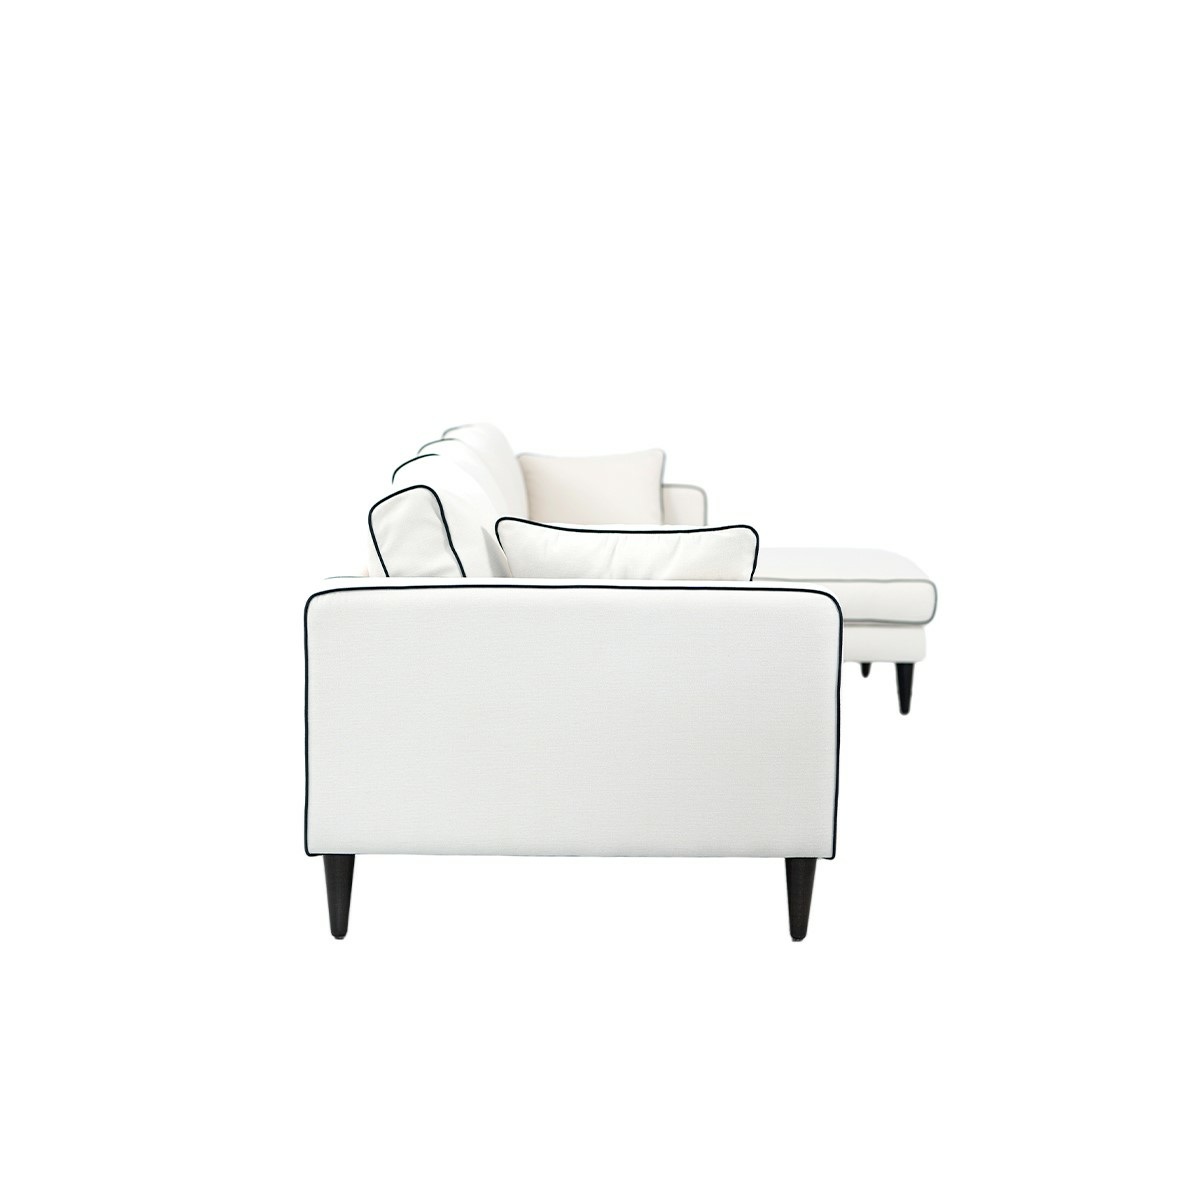 Noa corner sofa - Right angle, L300 x P150 x H75 cm - Cotton - image 3